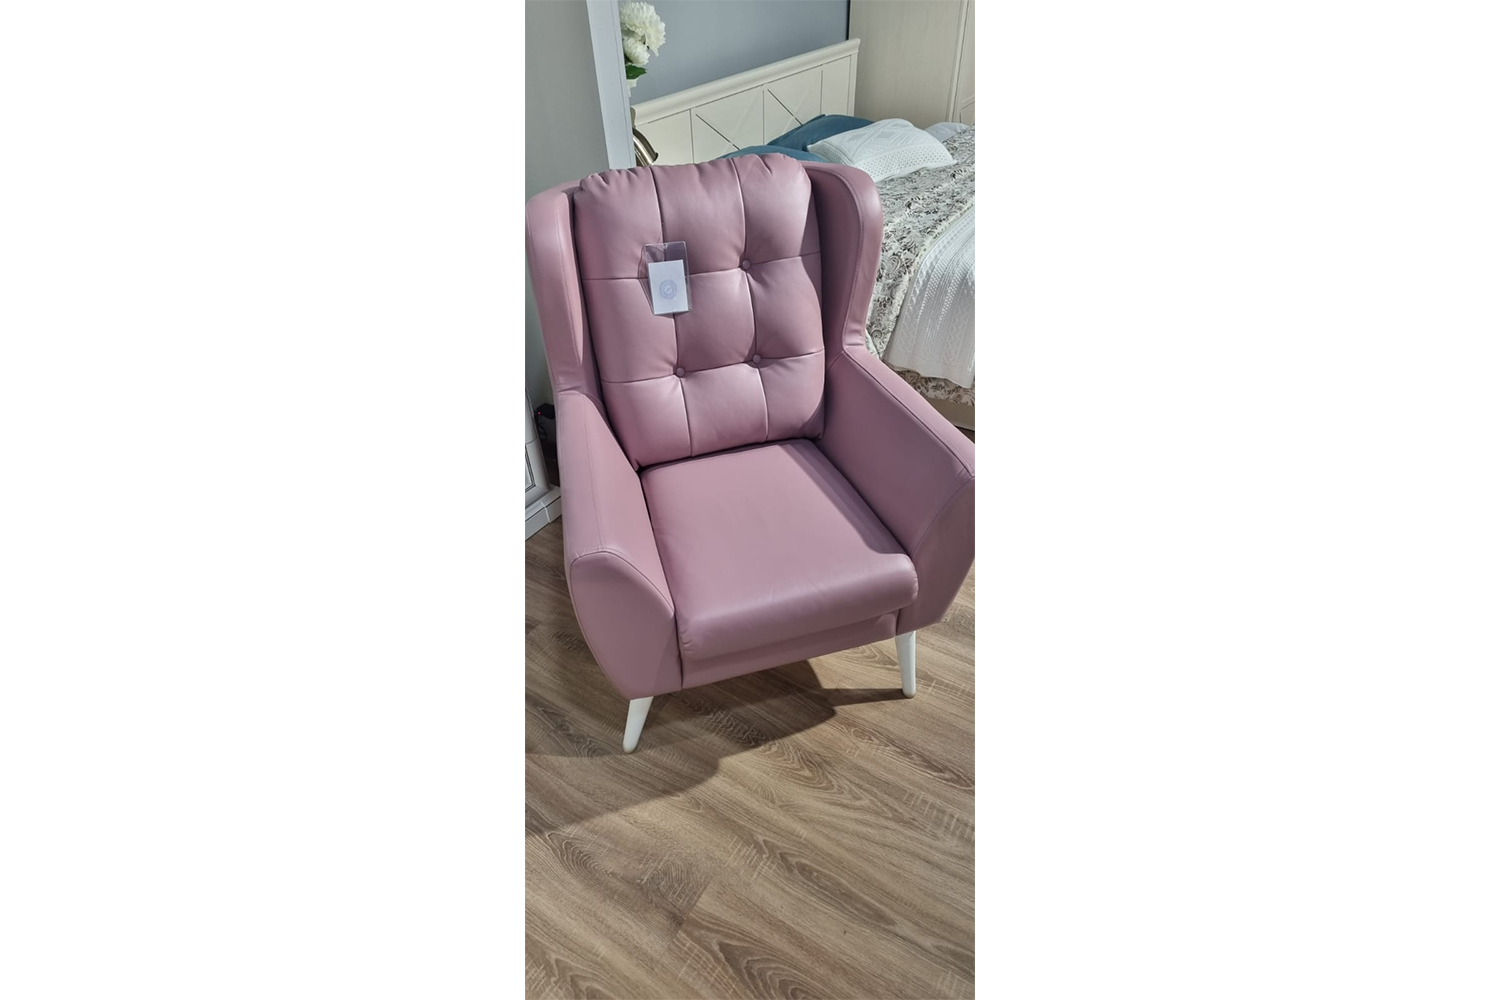 Кресло Лондон , Розовый купить в Москве от производителя, цена на КреслоЛондон в интернет-магазине мебели Ангстрем